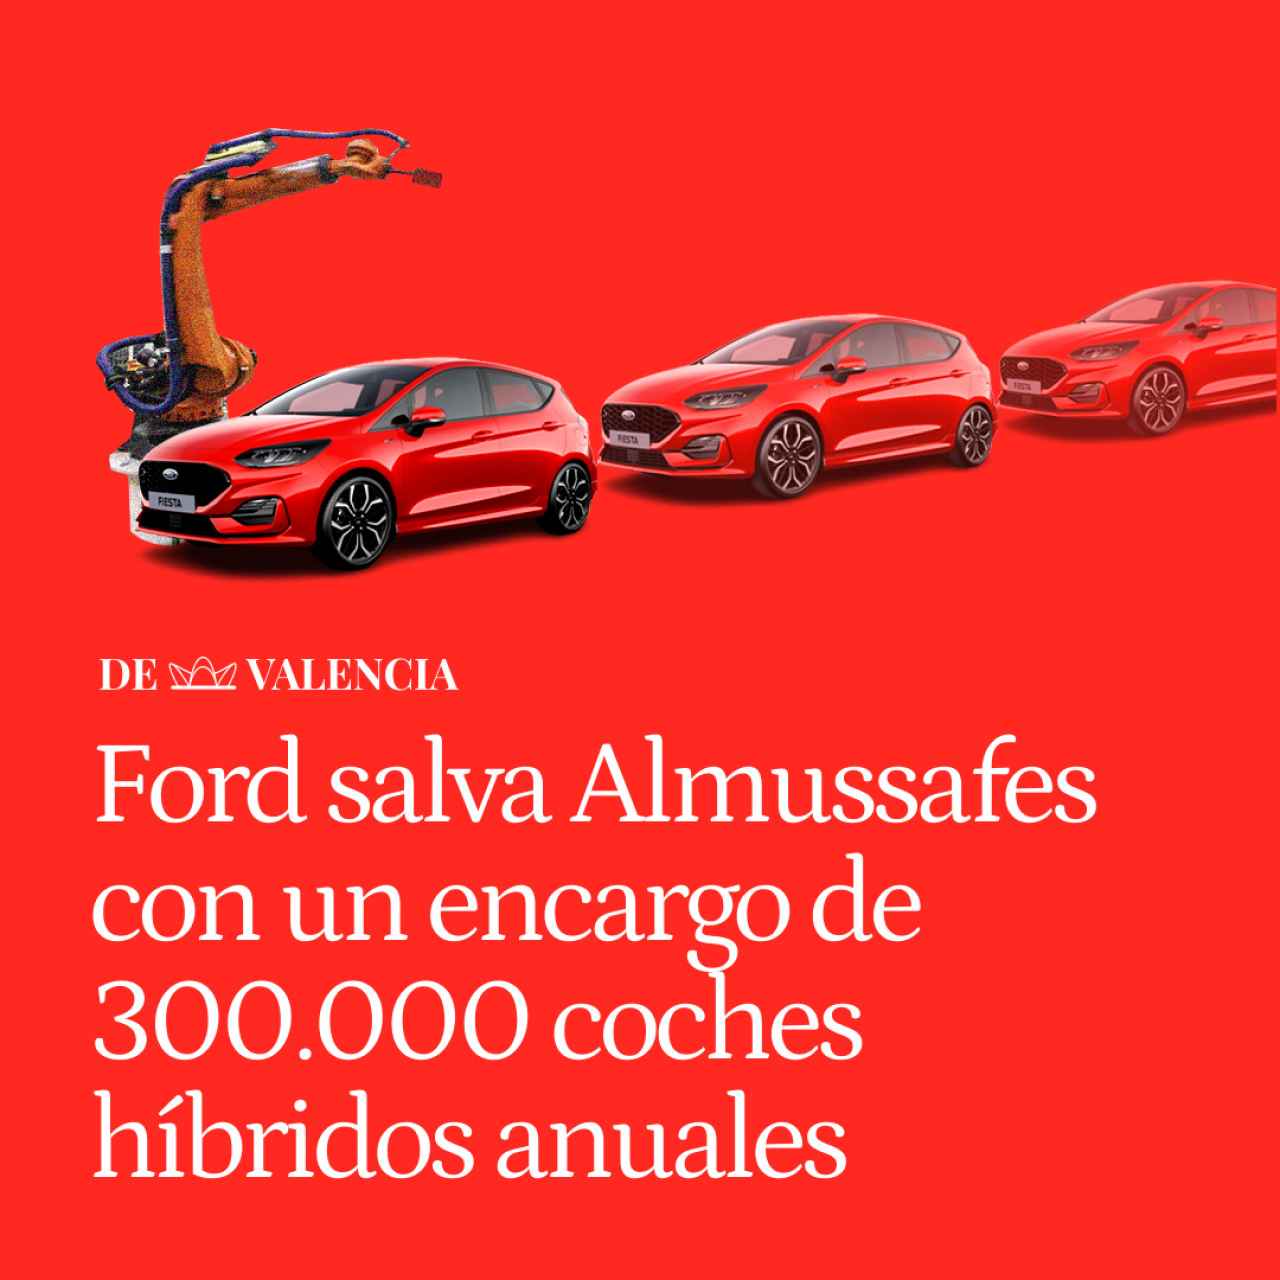 Ford salva Almussafes con un encargo de 300.000 coches híbridos anuales, pero tardará tres años en fabricarlos